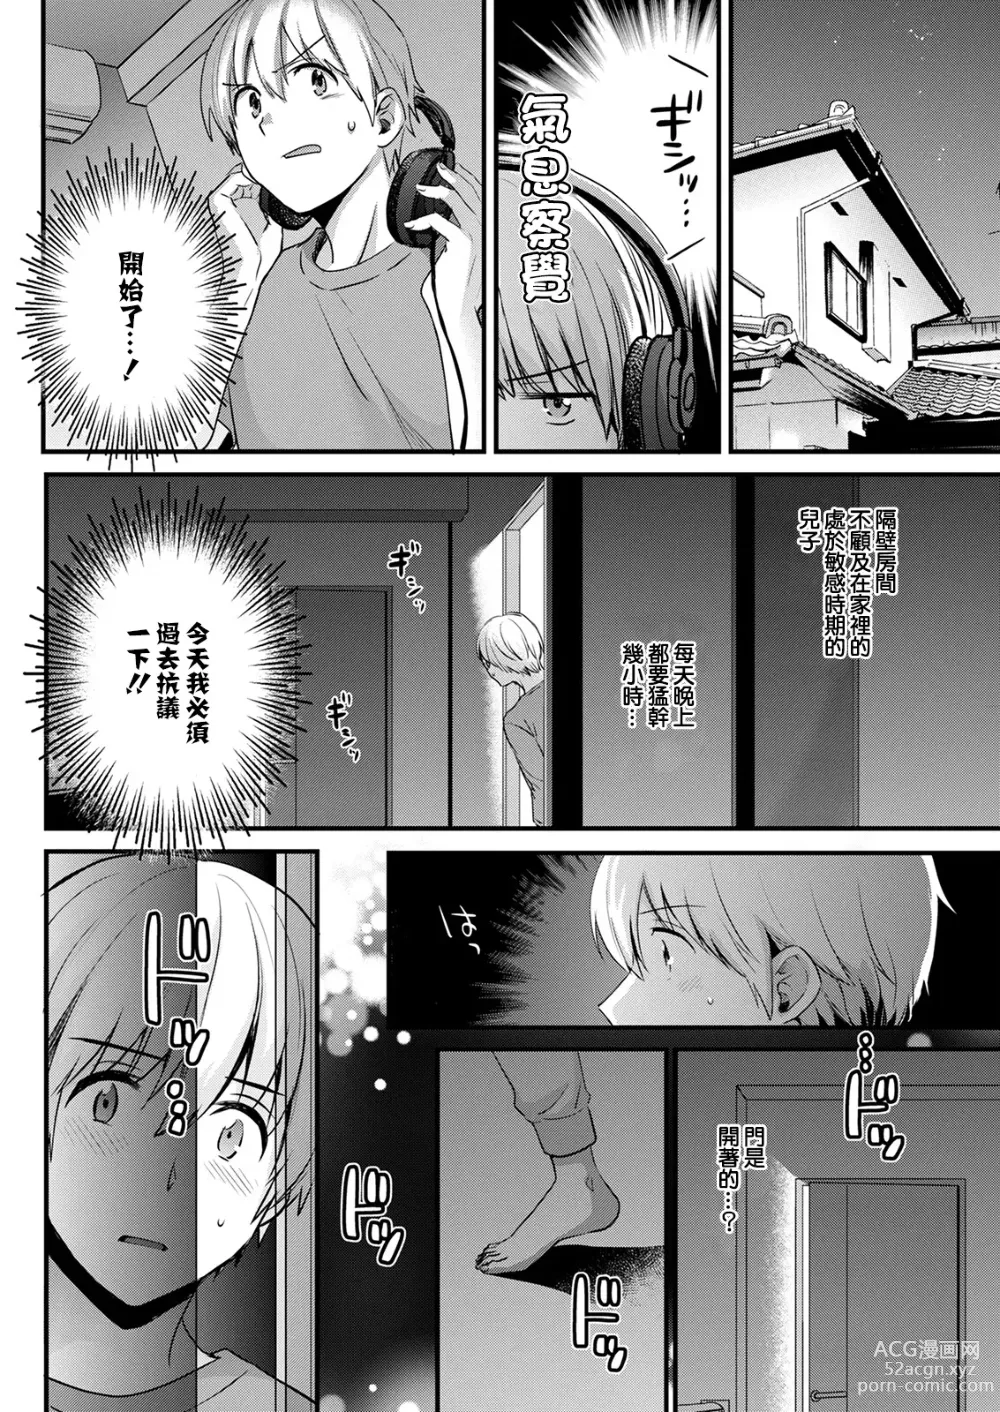 Page 8 of manga Tonari no Baba no Seiyoku ga Sugokute Komattemasu!